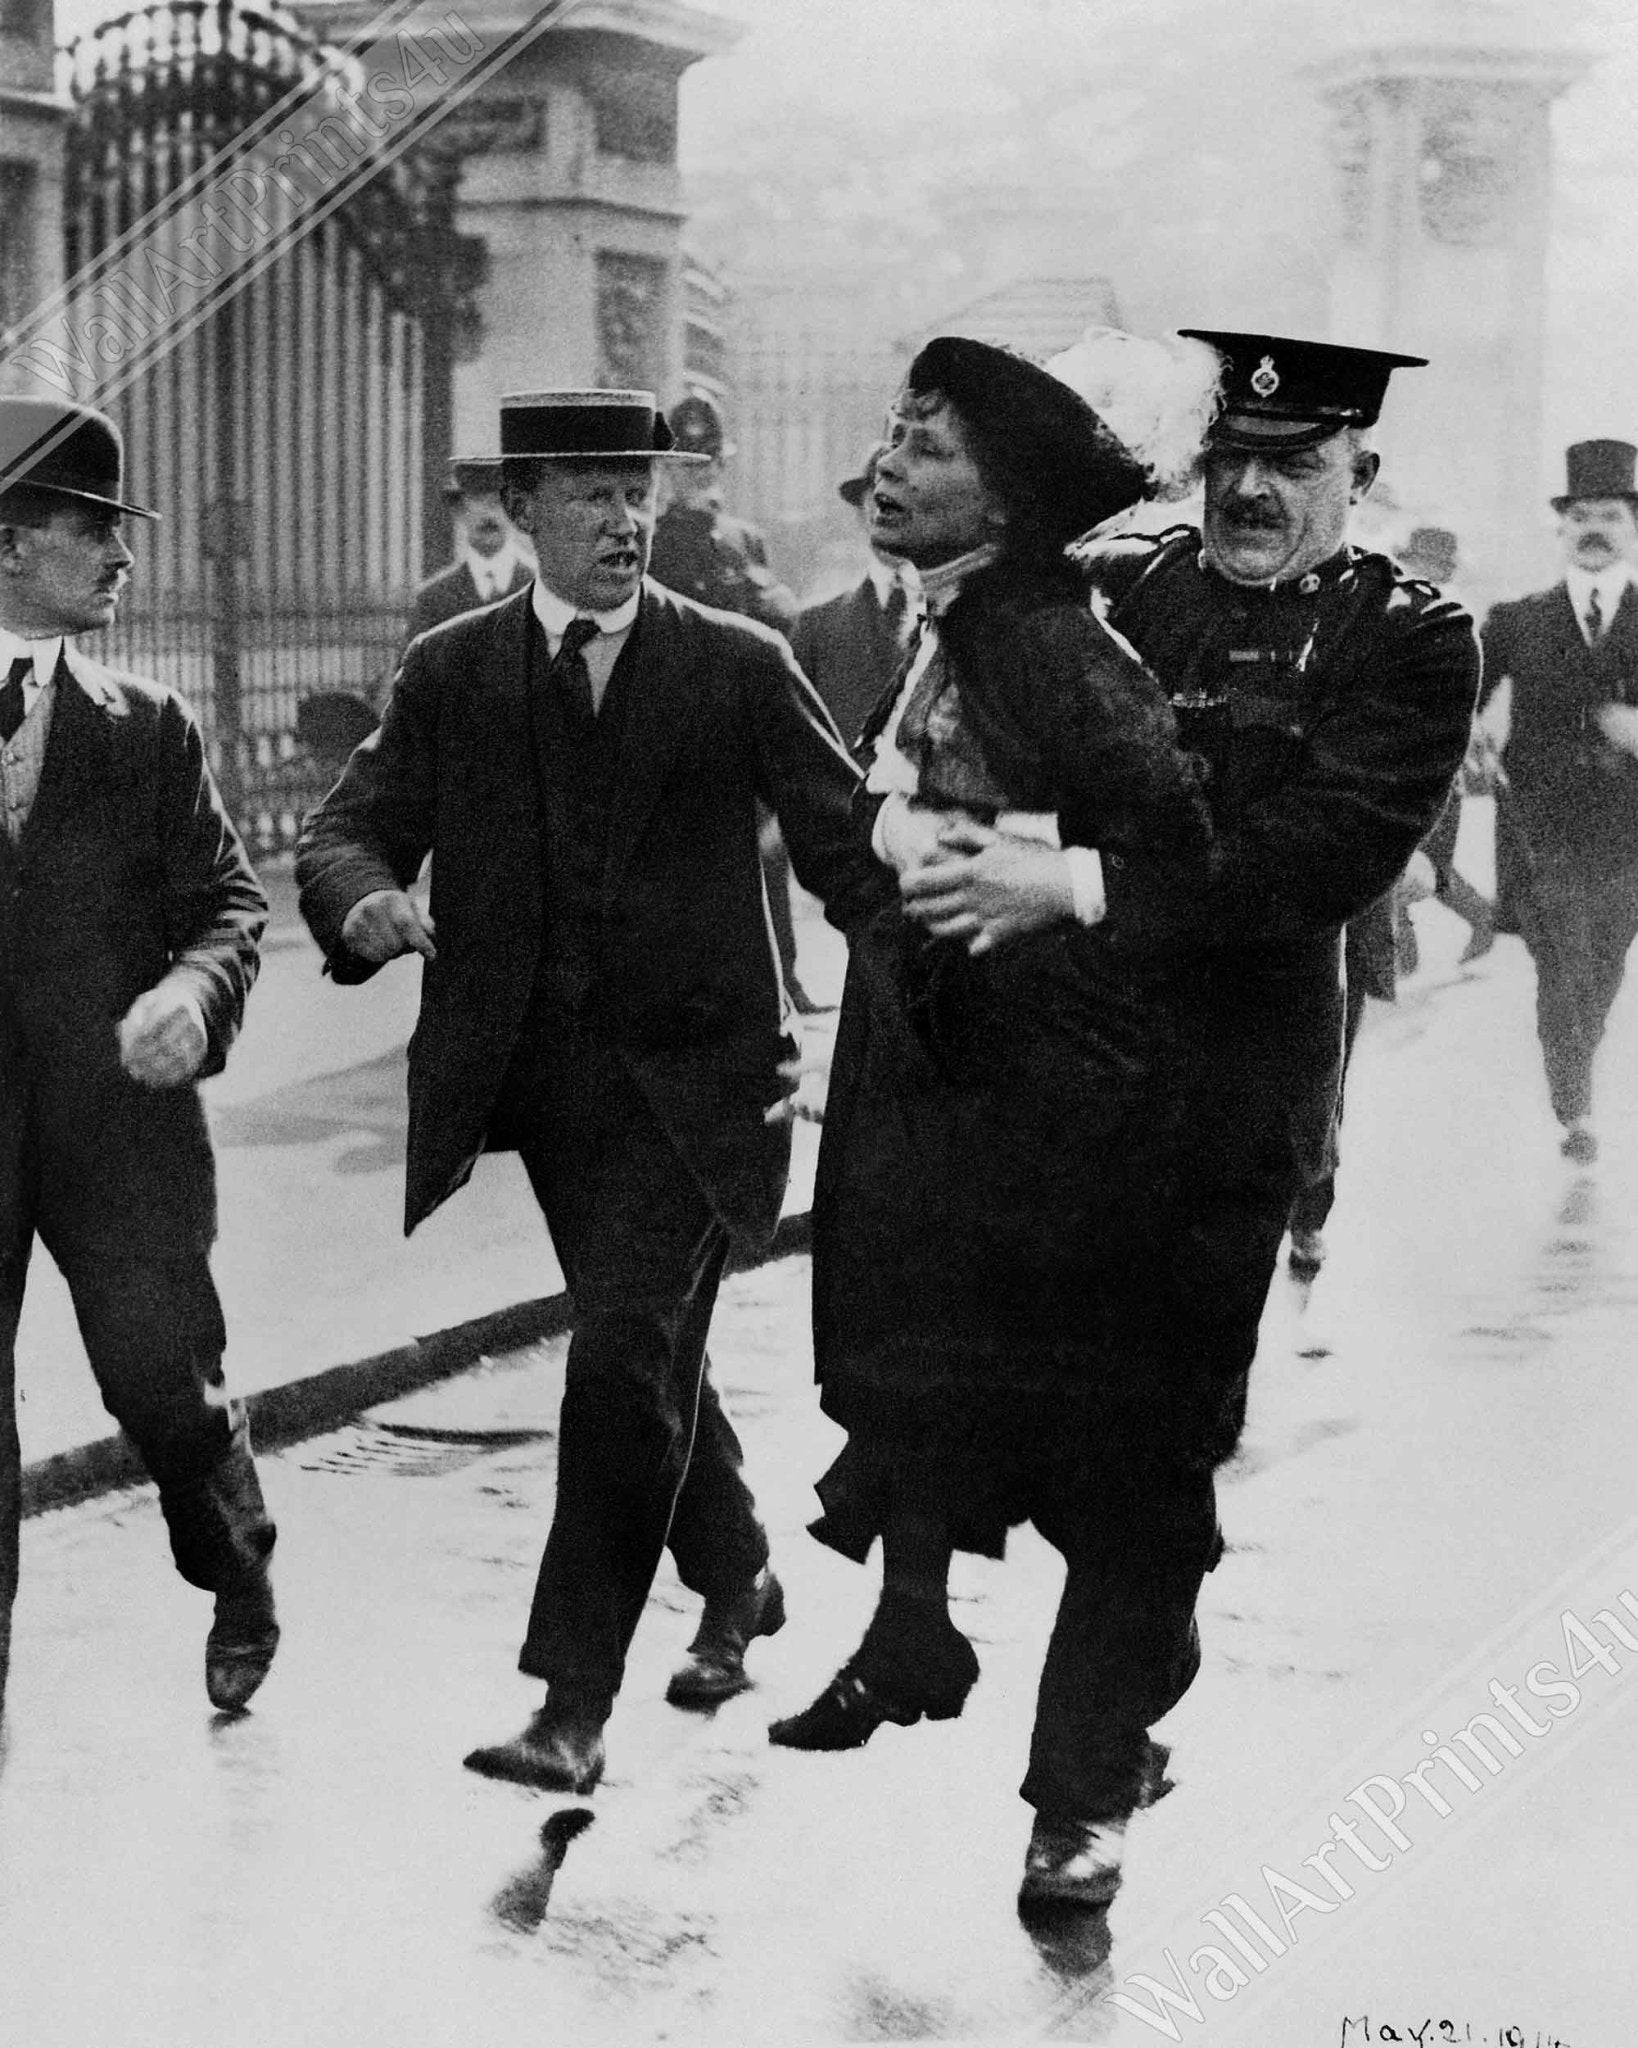 Emmeline Pankhurst Framed, Arrested Carried By Police Officer Vintage Photo Portrait - Emmeline Pankhurst Framed Print - WallArtPrints4U